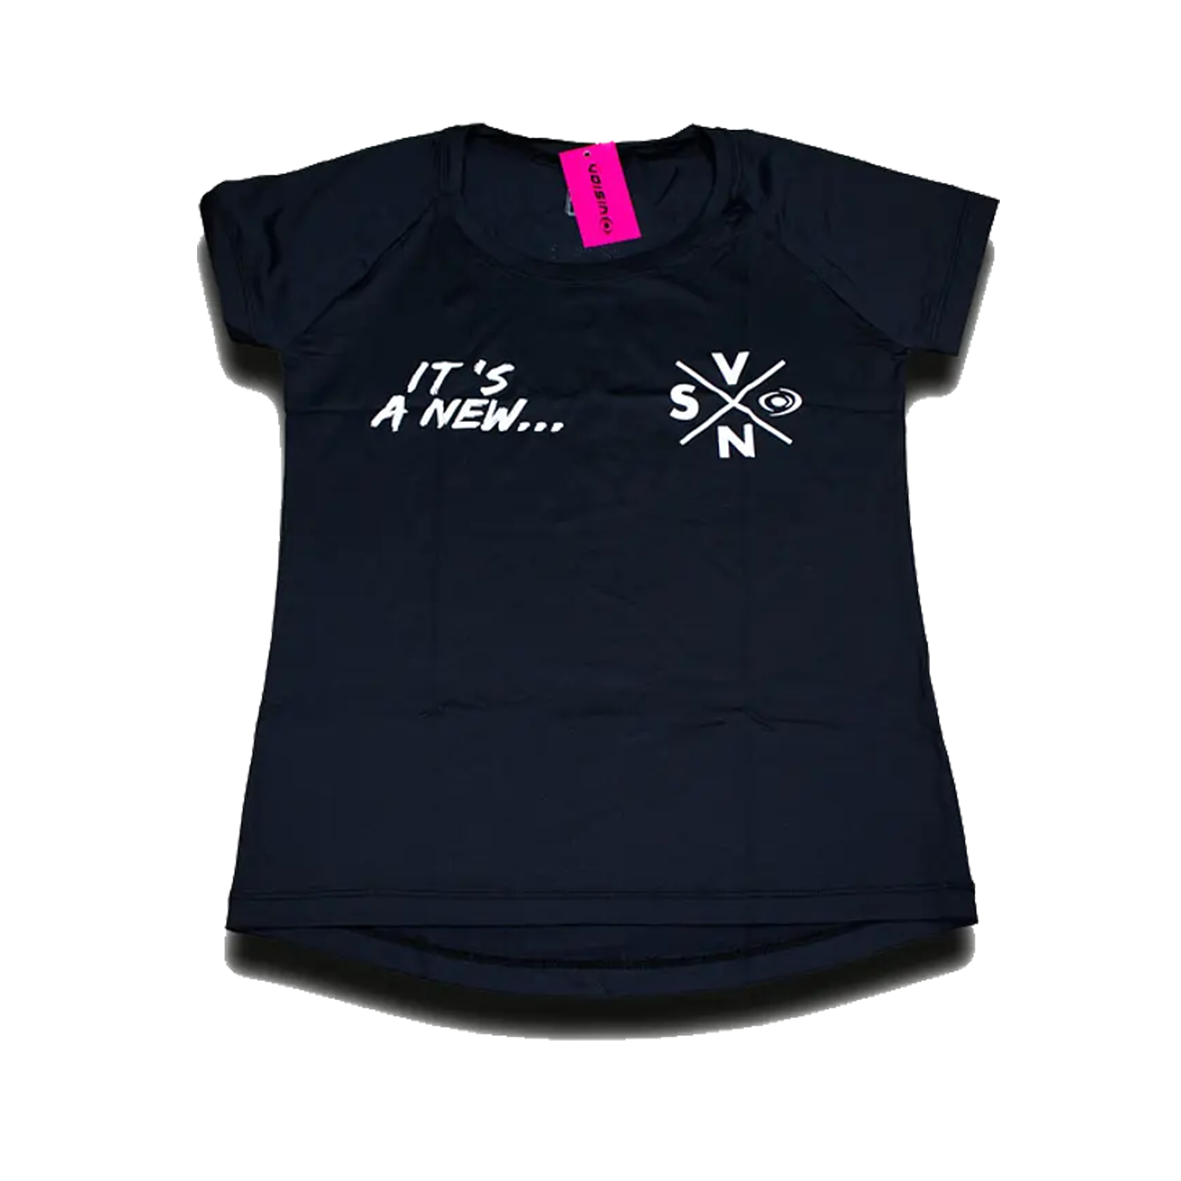 Vision Beach Tennis Tech Women T-Shirt Black